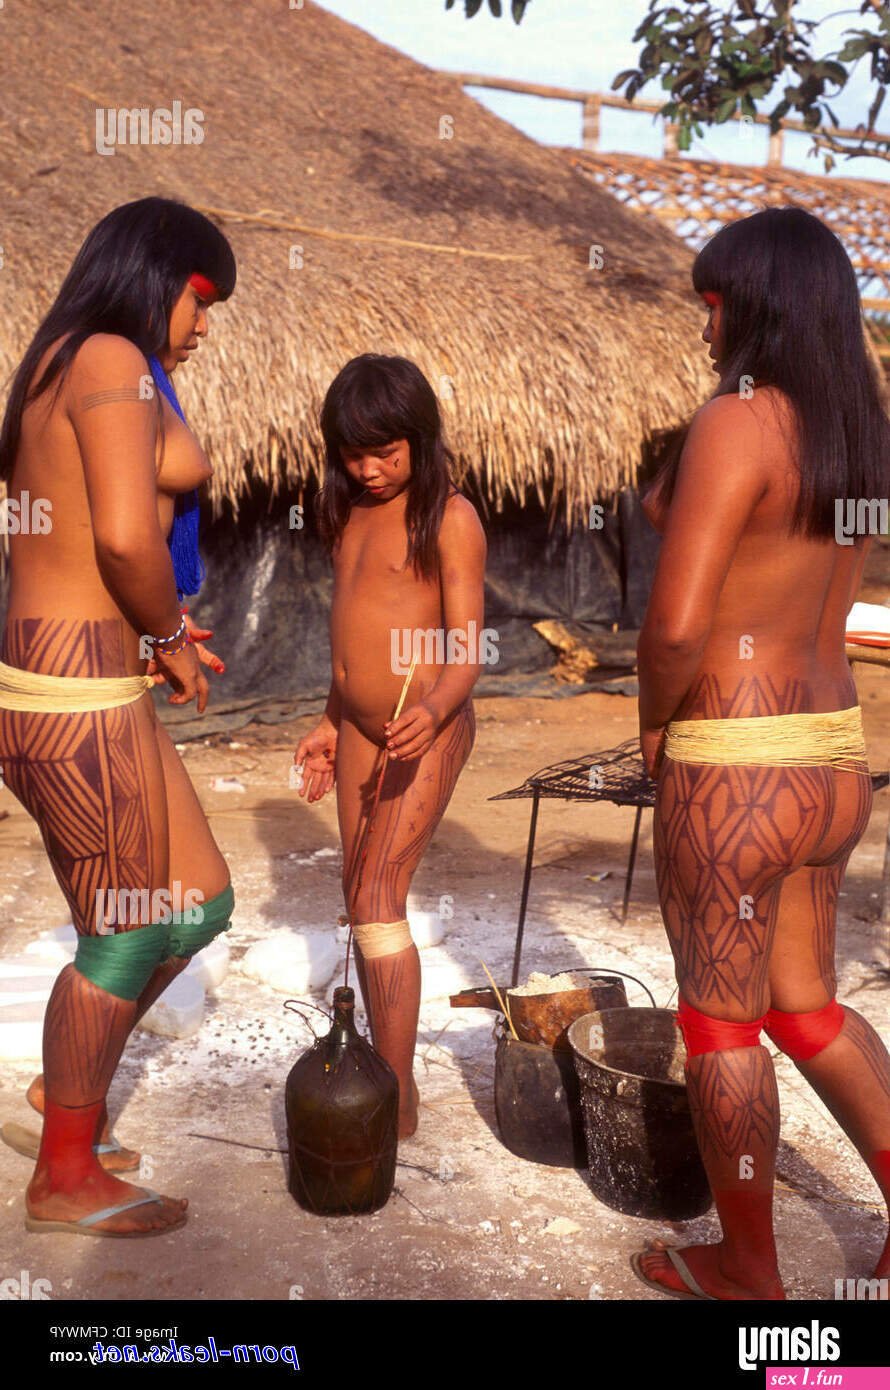 Xingu Porn - 27 photos